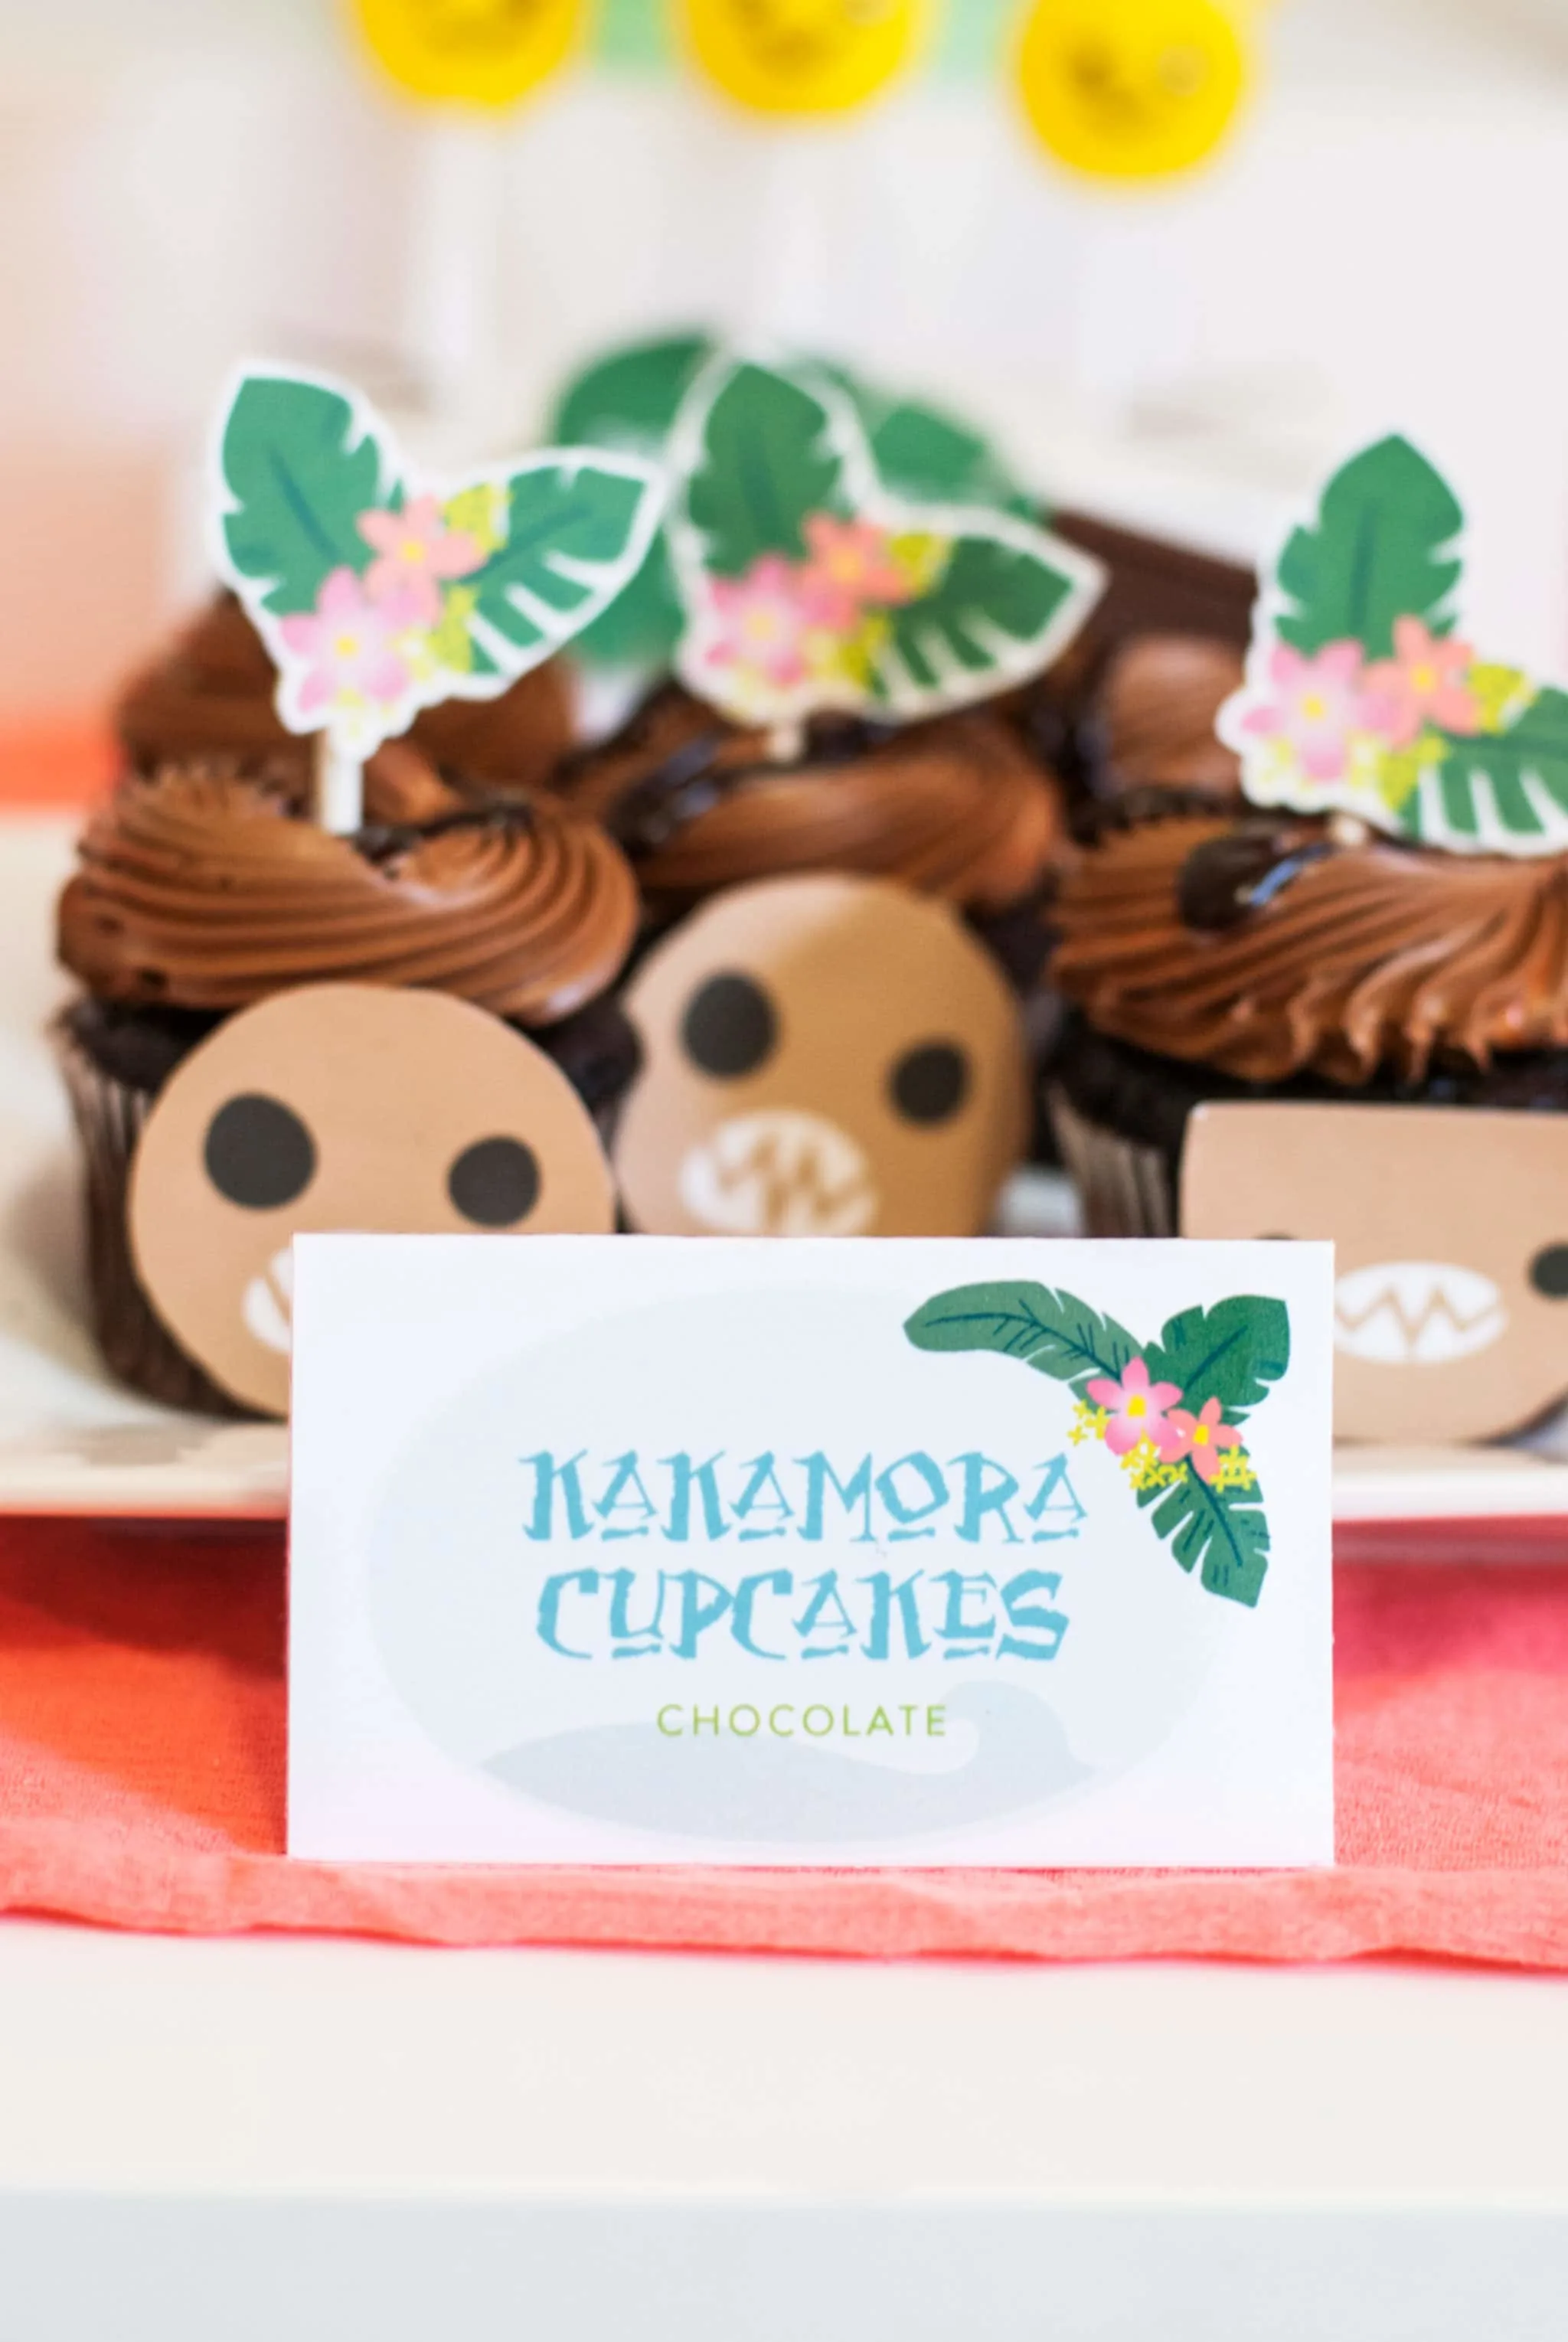 Moana Birthday Party Ideas Kakamora Cupcakes - Project Nursery